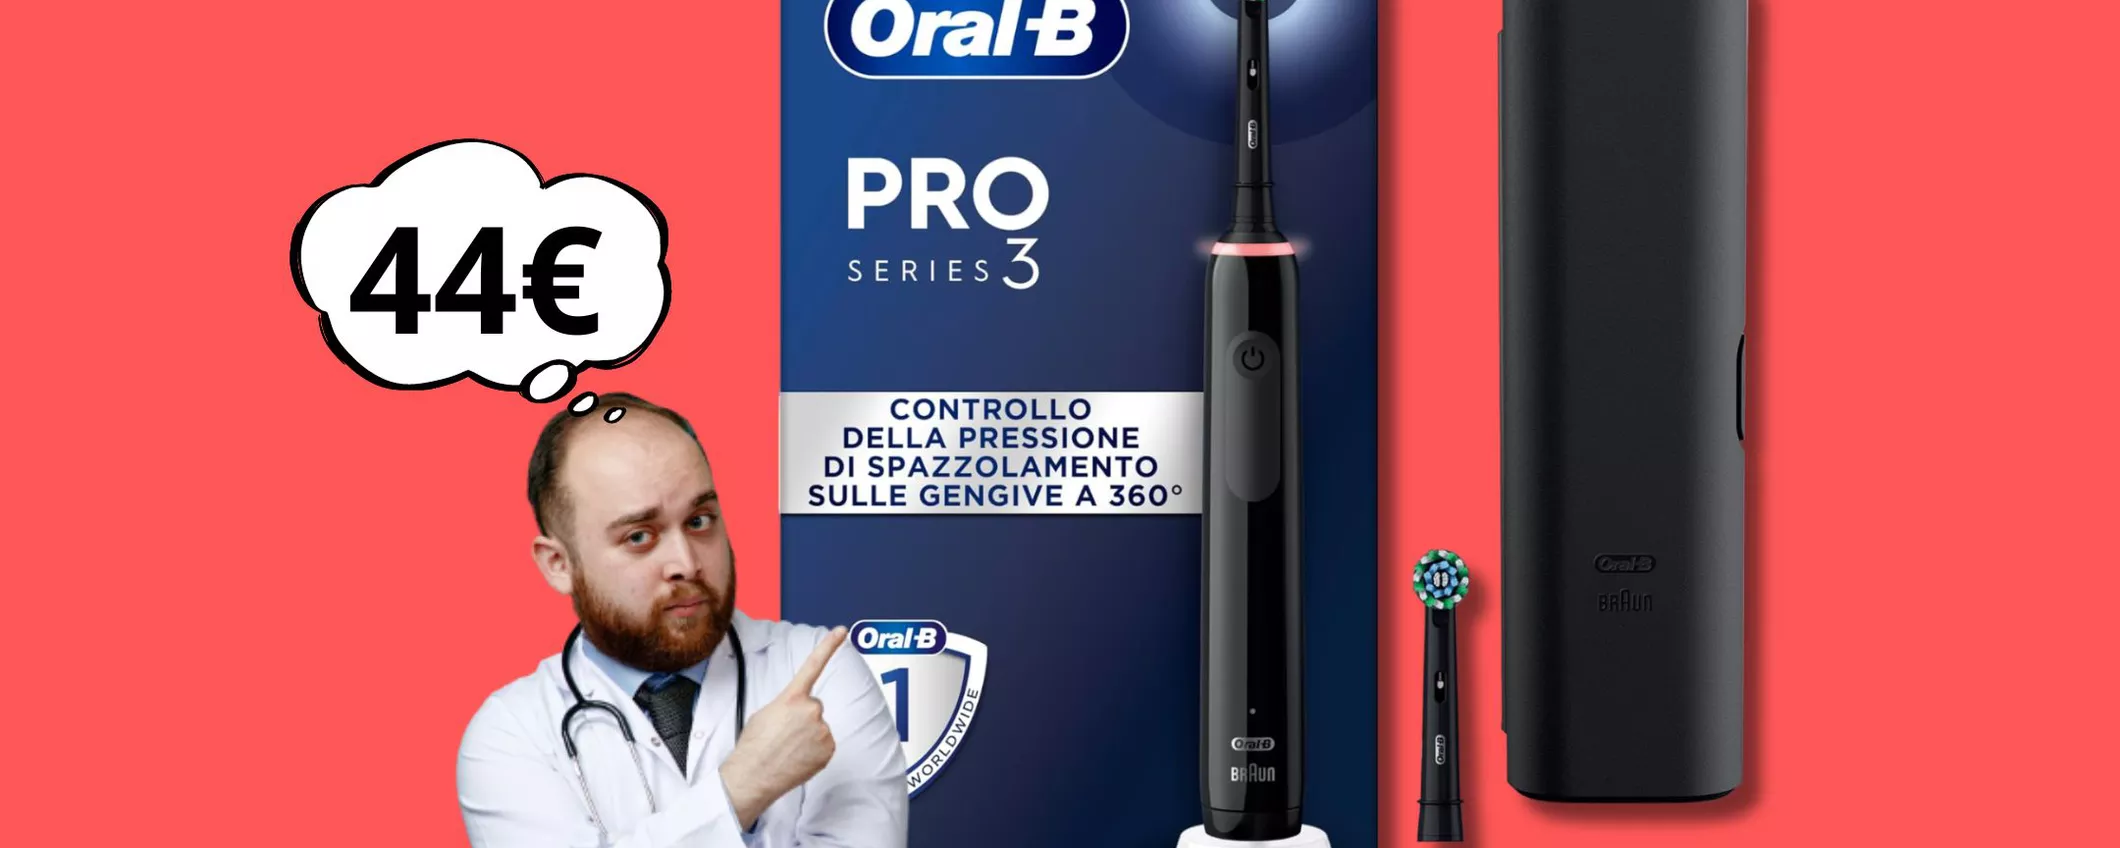 Kit per la pulizia dei denti ovunque a soli 44 euro: spazzolino elettrico Oral-B + testina di riserva + Custodia viaggio!